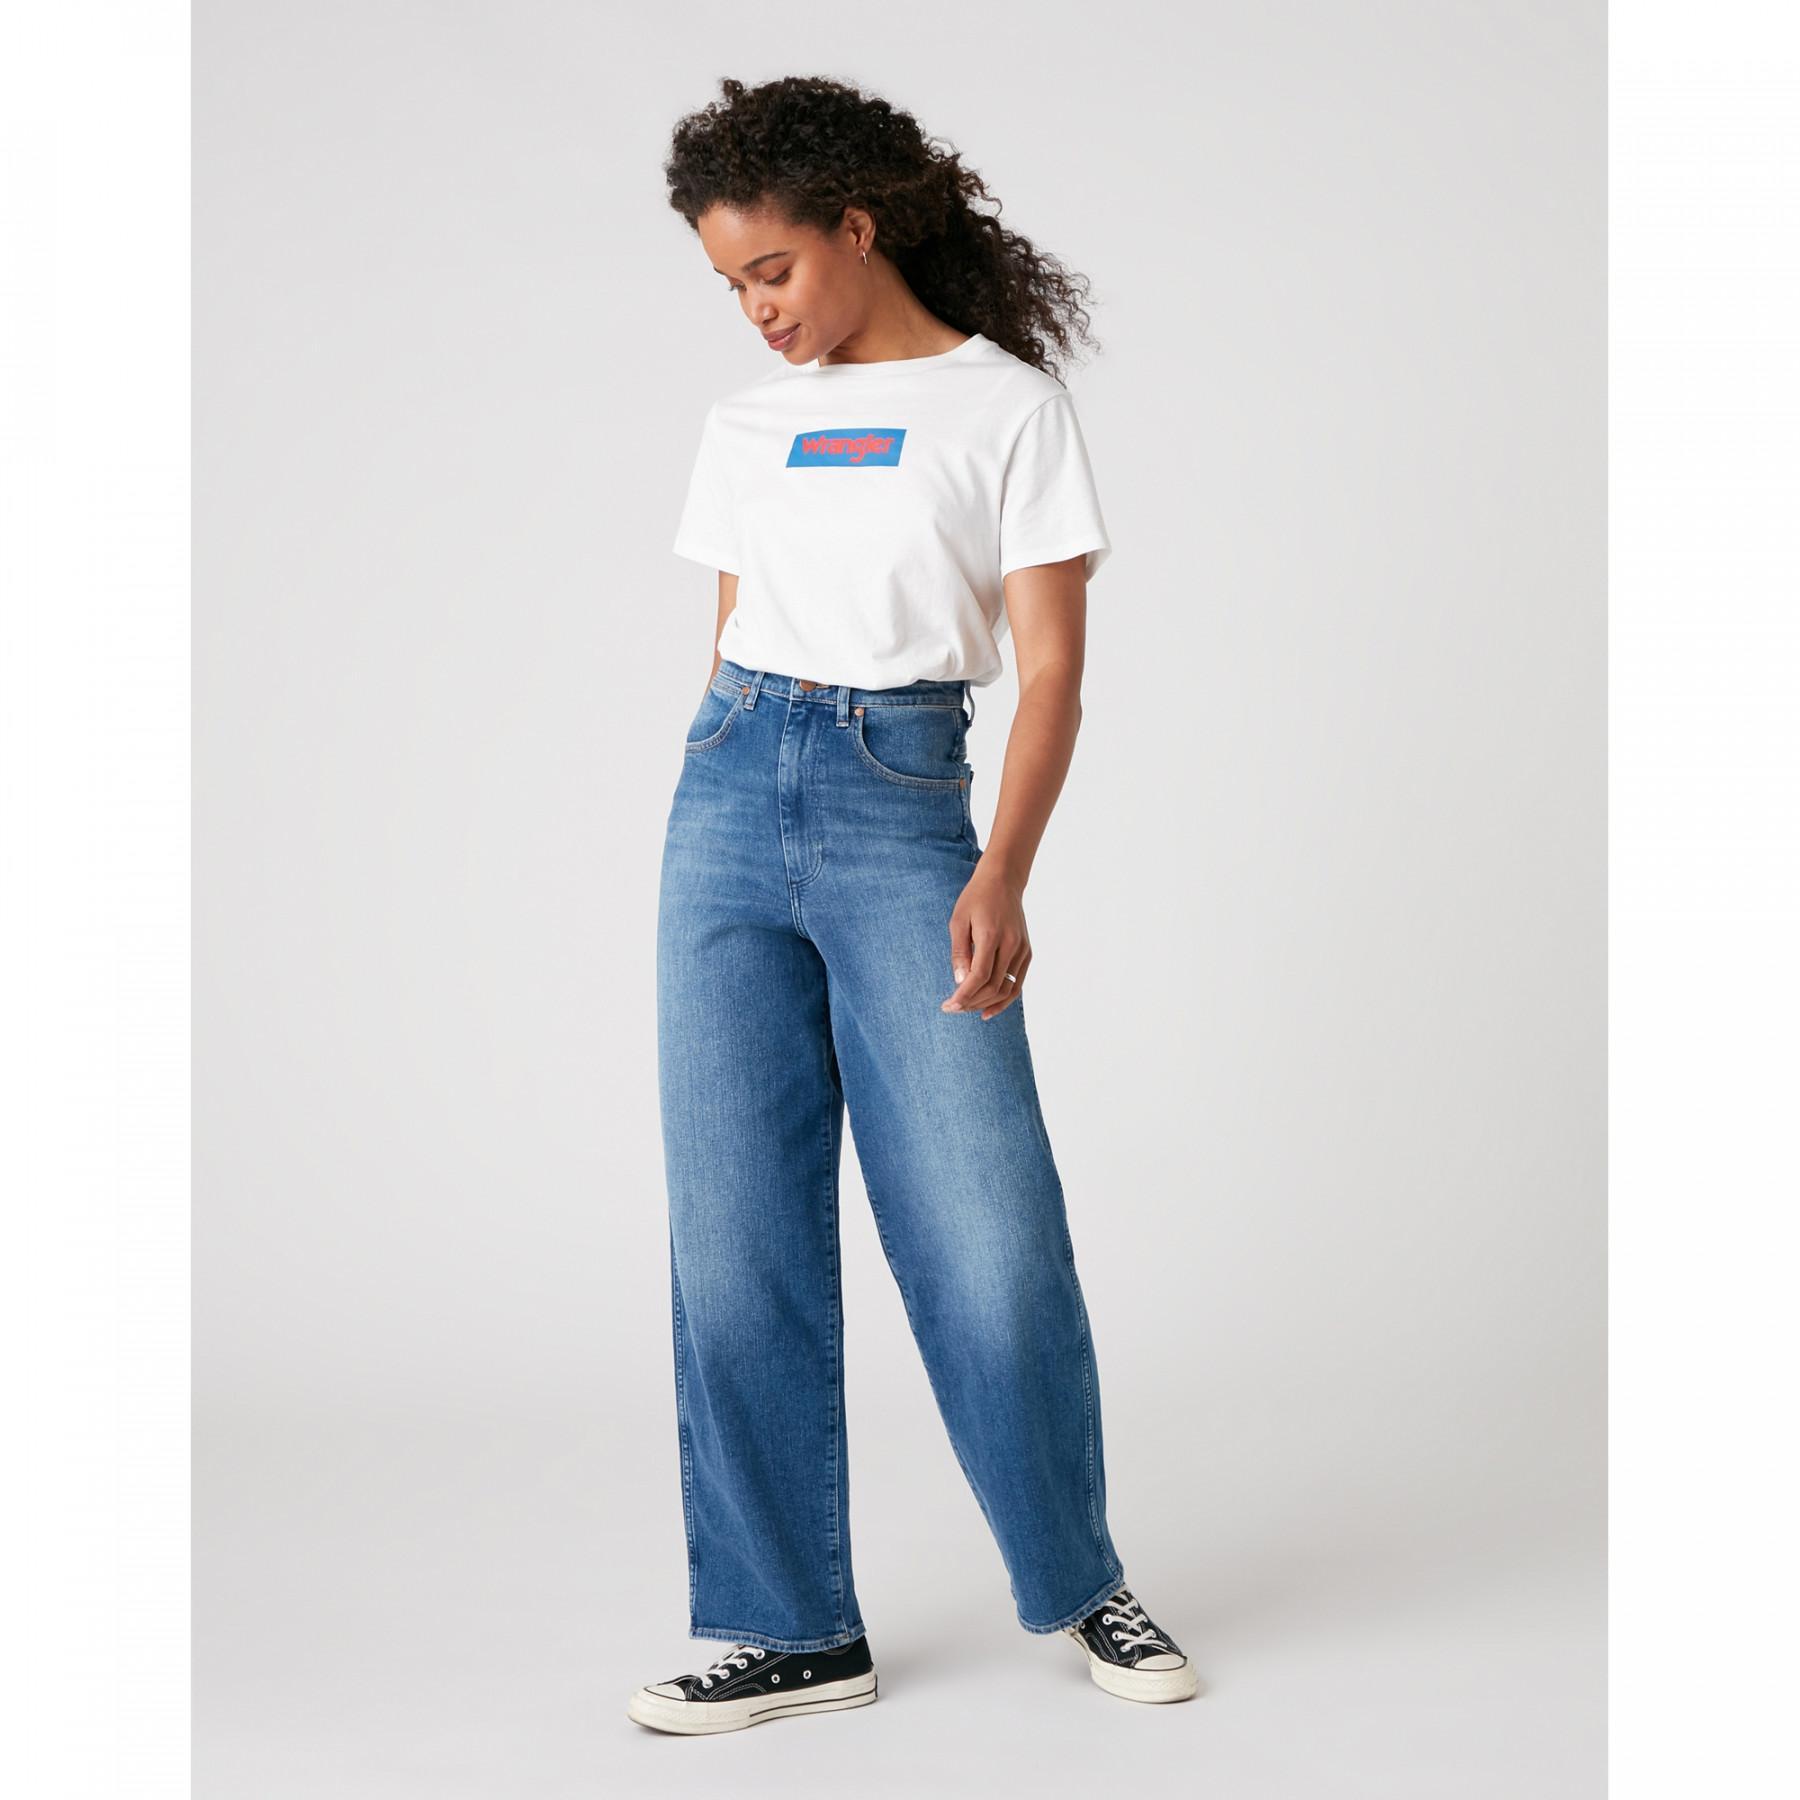 Women's jeans Wrangler Wide Barrel Carefree